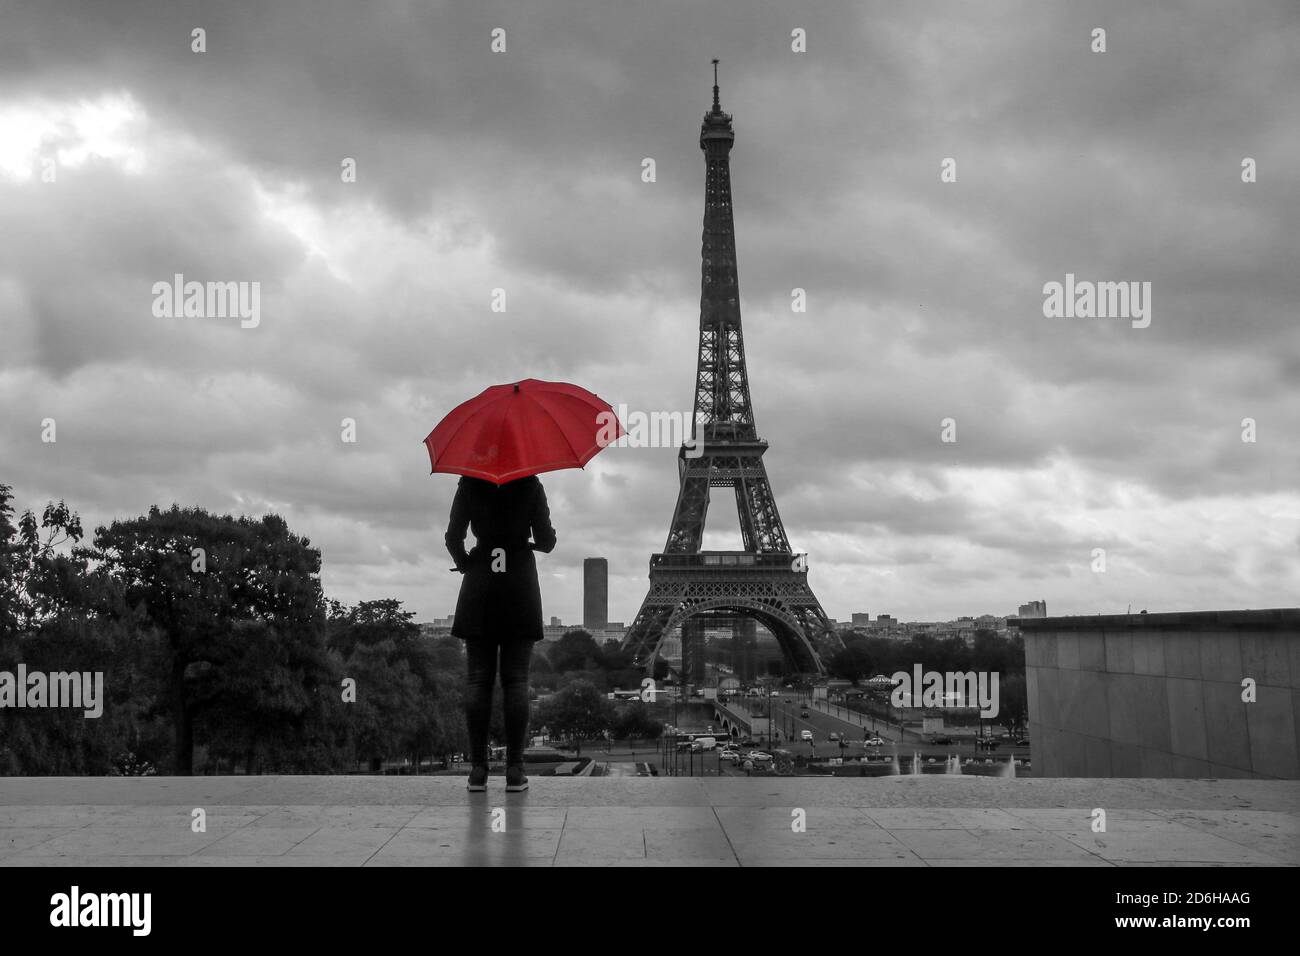 Die Dame mit einem roten Regenschirm steht vor dem Eiffelturm in Paris in Frankreich. Schwarz-Weiß-Bild mit isolierten roten Regenschirm. Stockfoto